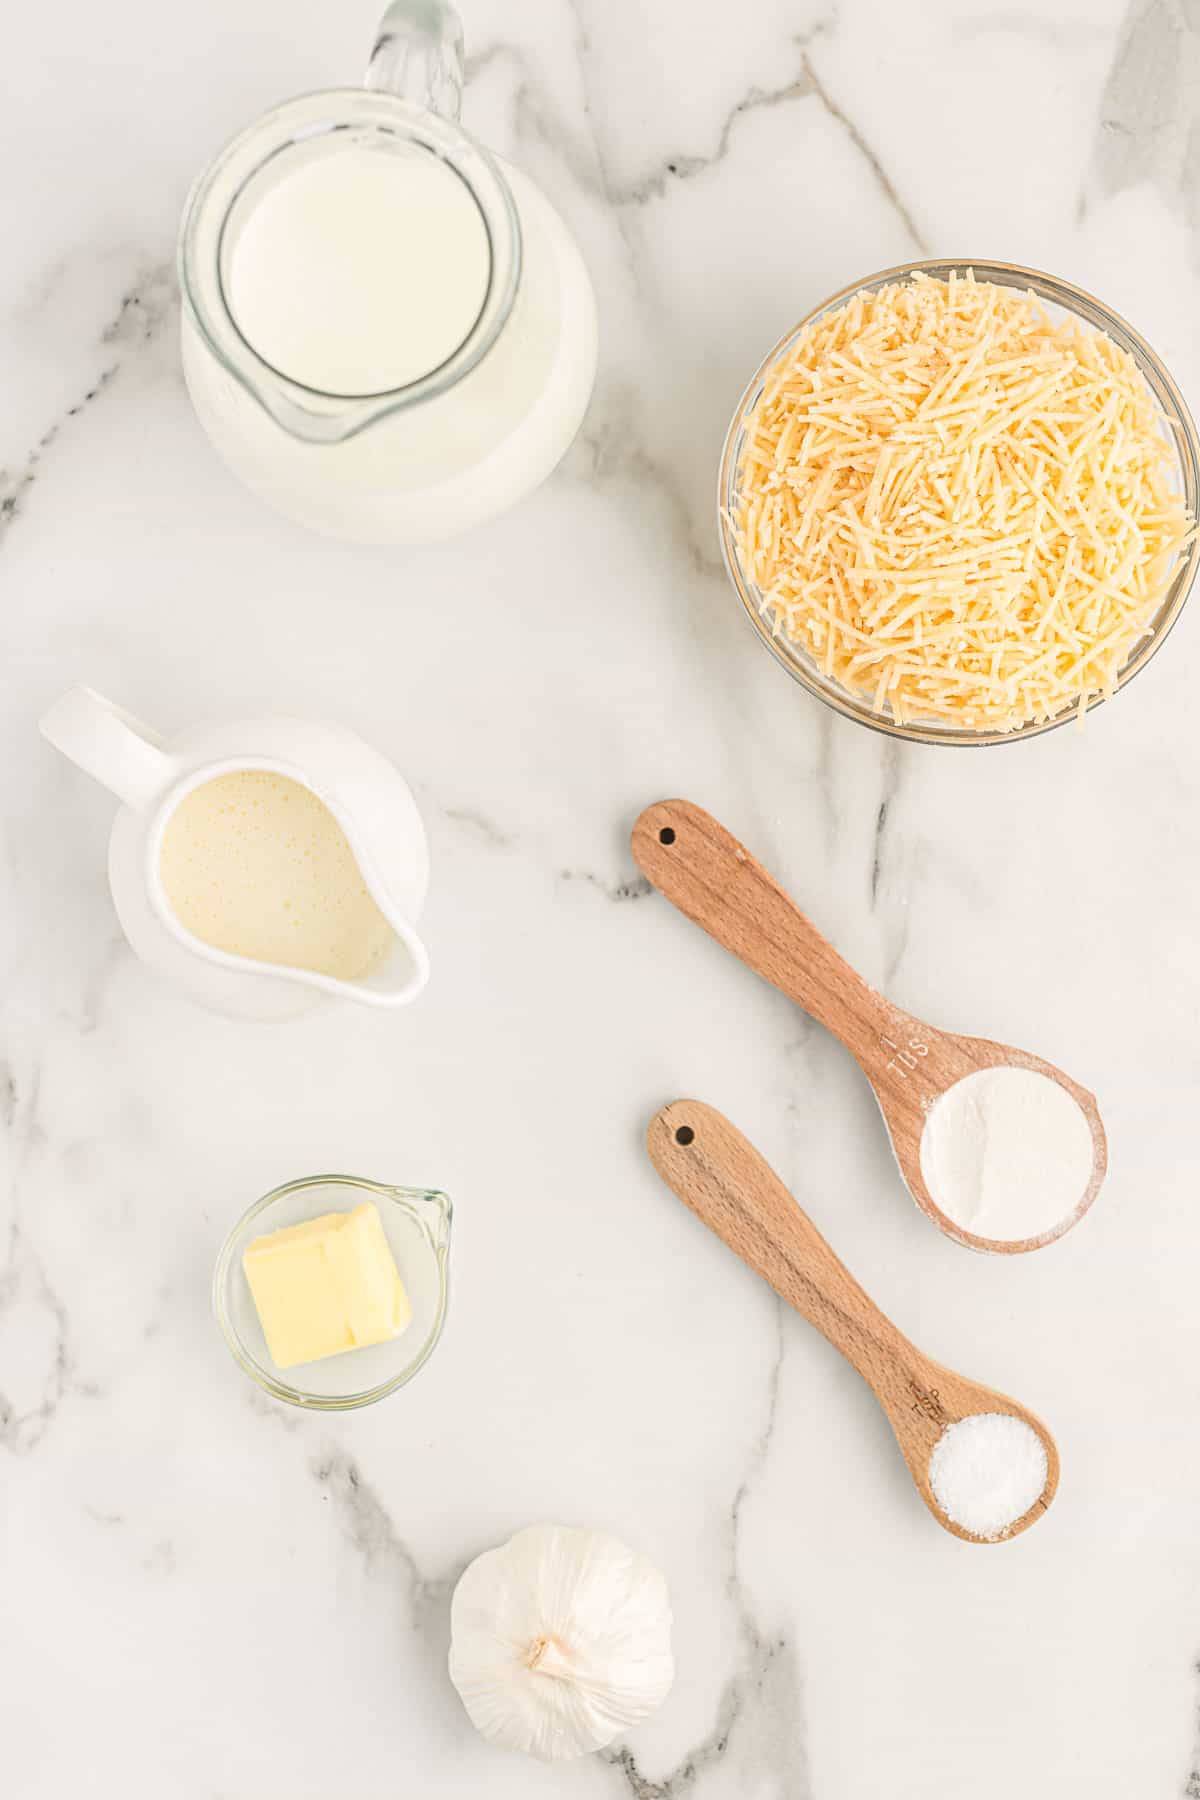 ingredients to make parmesan cream sauce